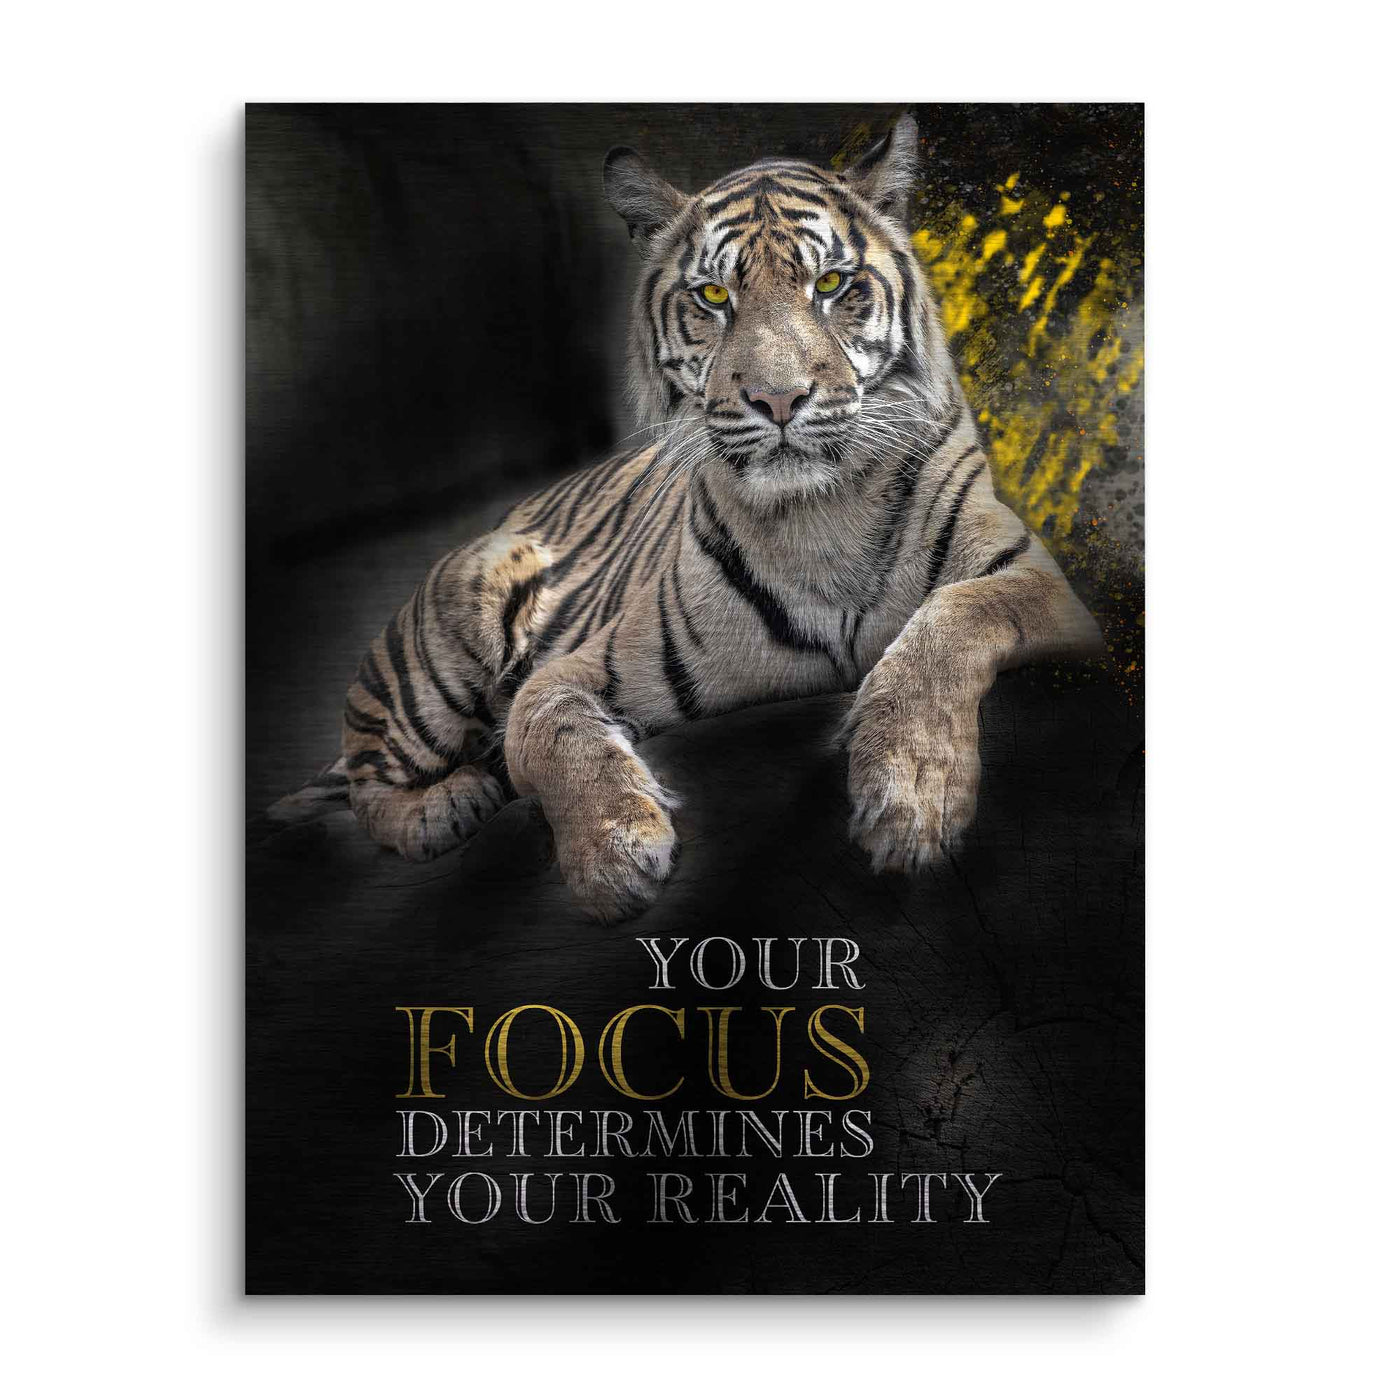 Focus determines reality